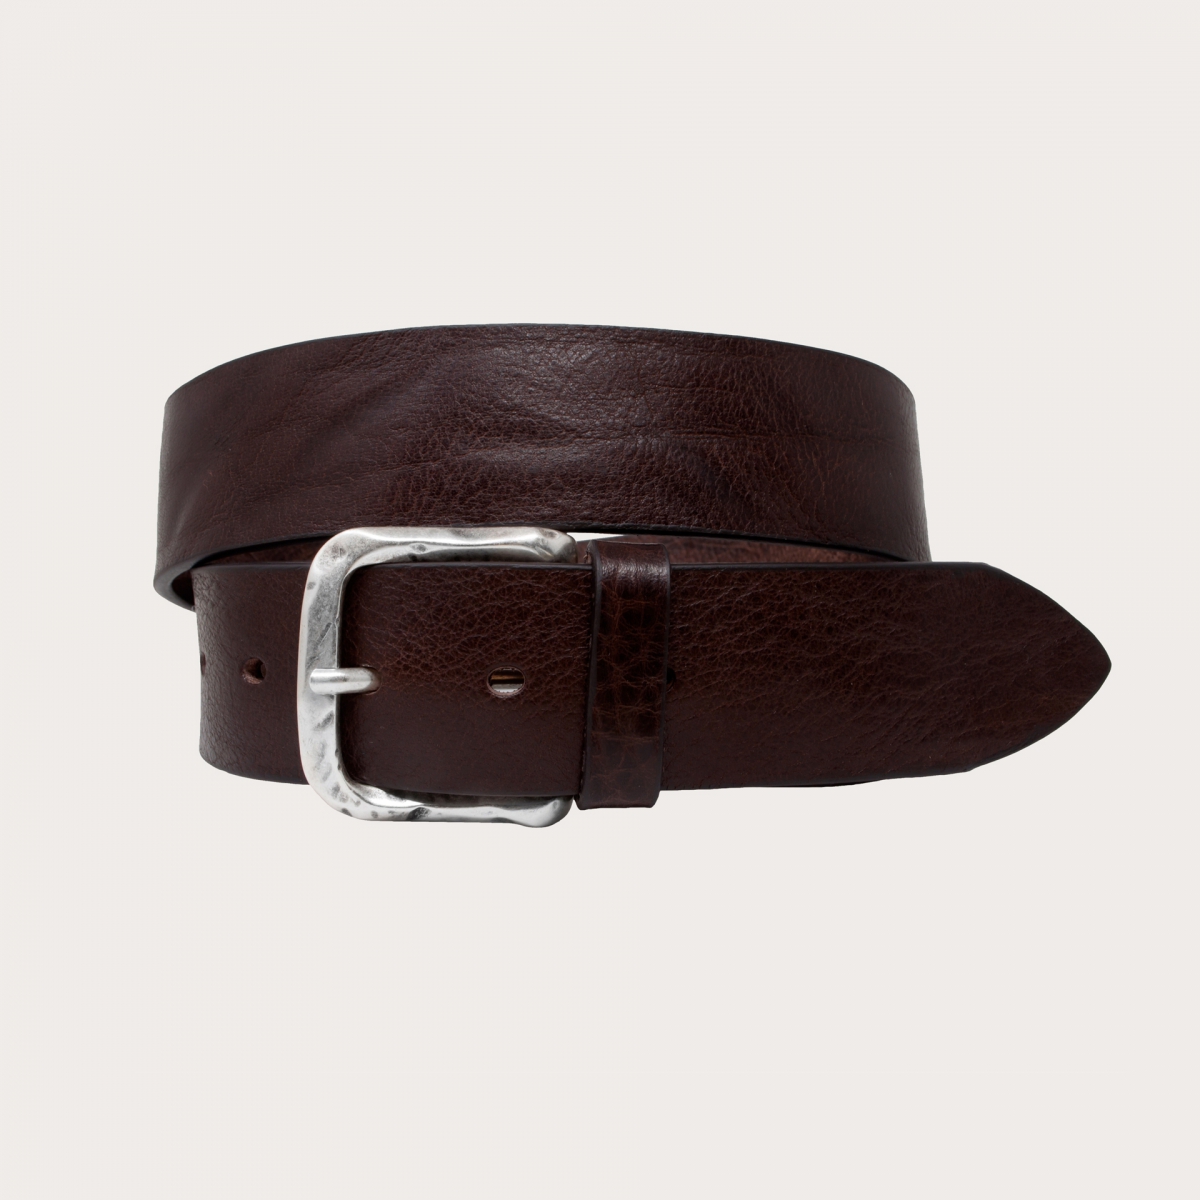 BRUCLE Cinturón casual en piel de toro raw cut, marrón oscuro